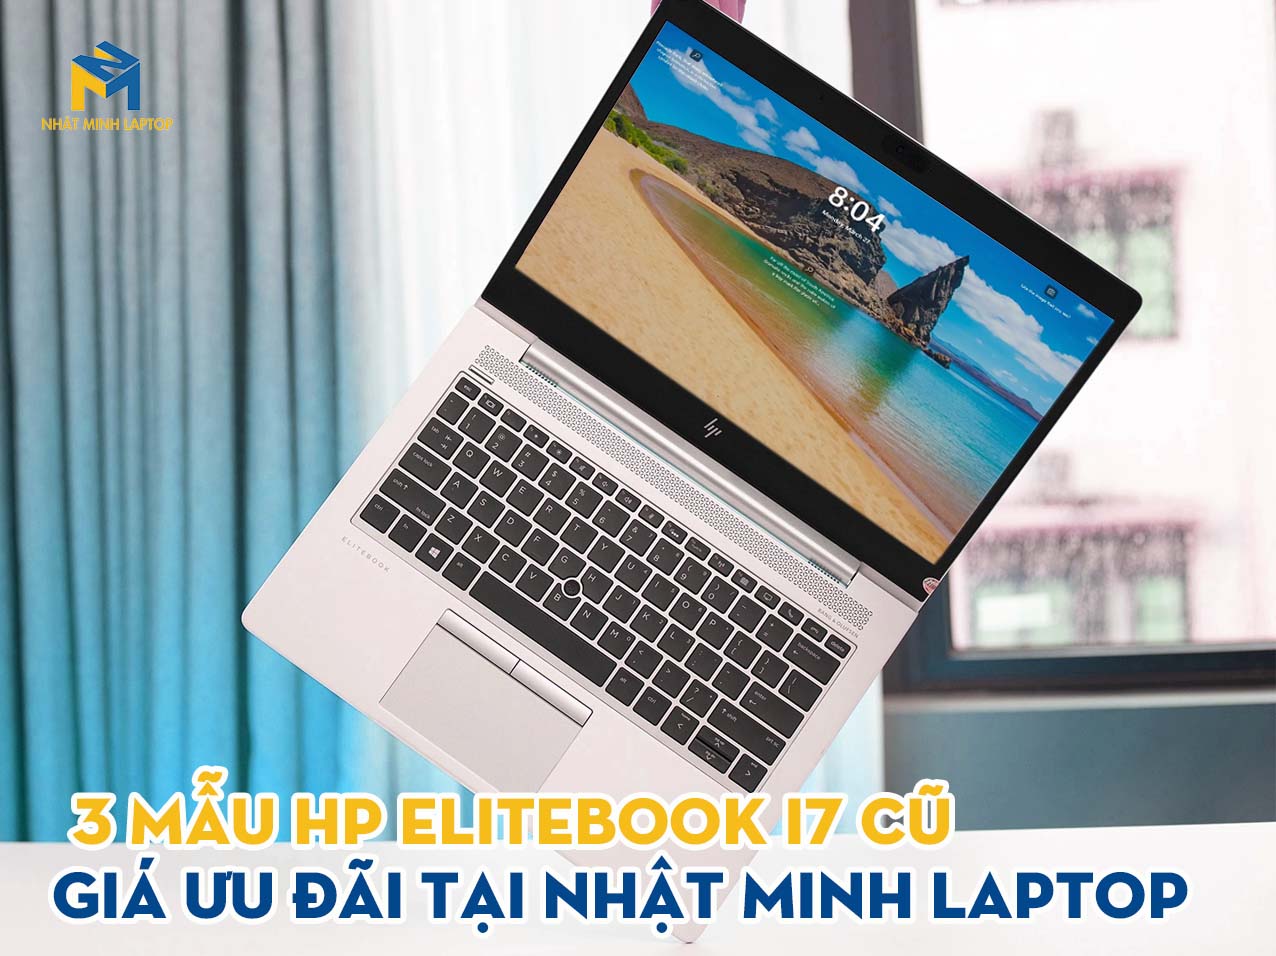 3 Mẫu HP Elitebook i7 cũ, giá rẻ tại Nhật Minh Laptop